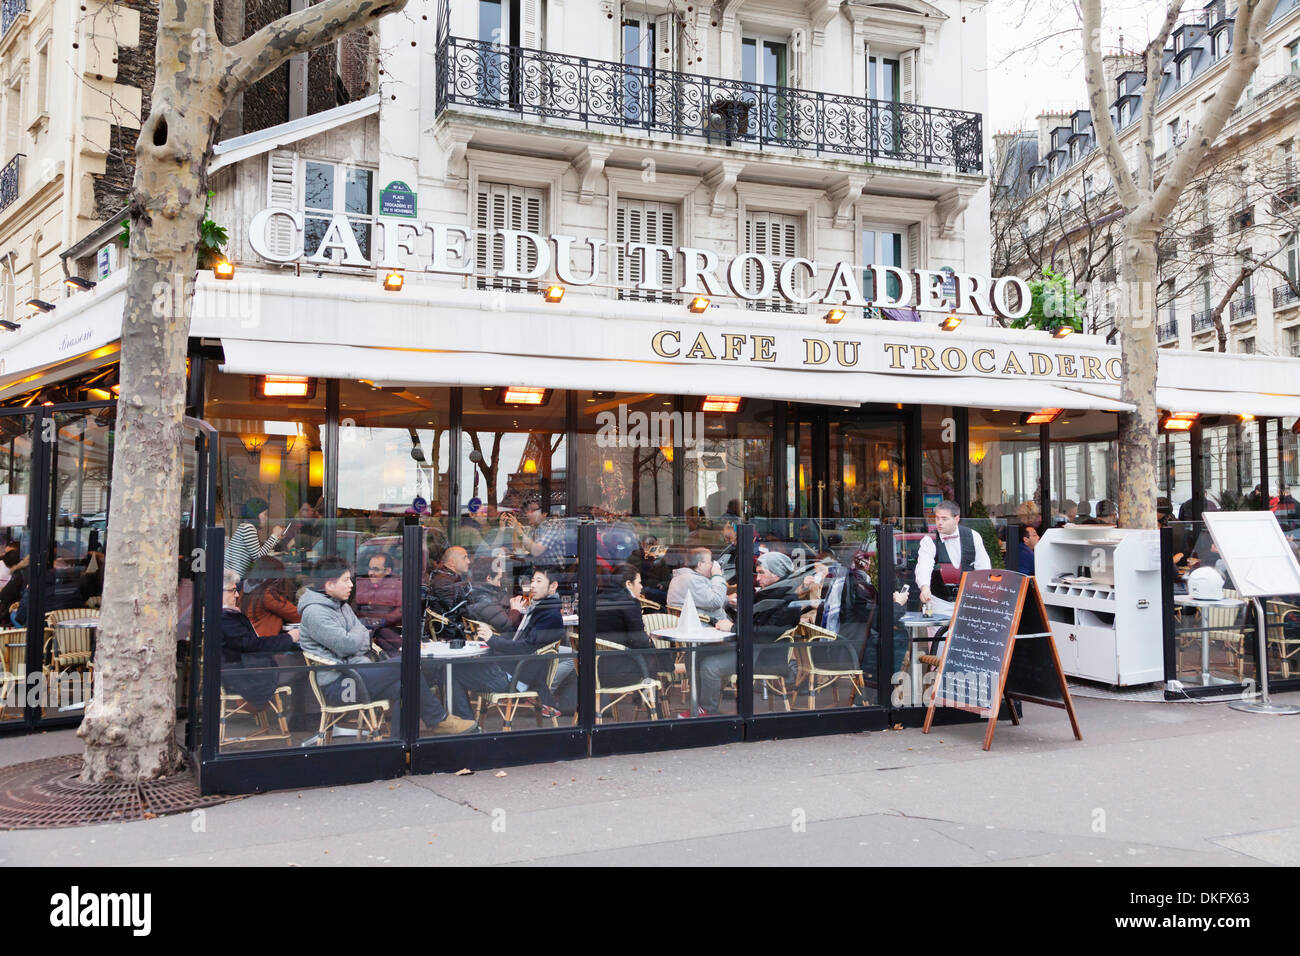 Il Cafe du Trocadero, Trocadero, Parigi, Ile de France, Francia, Europa Foto Stock